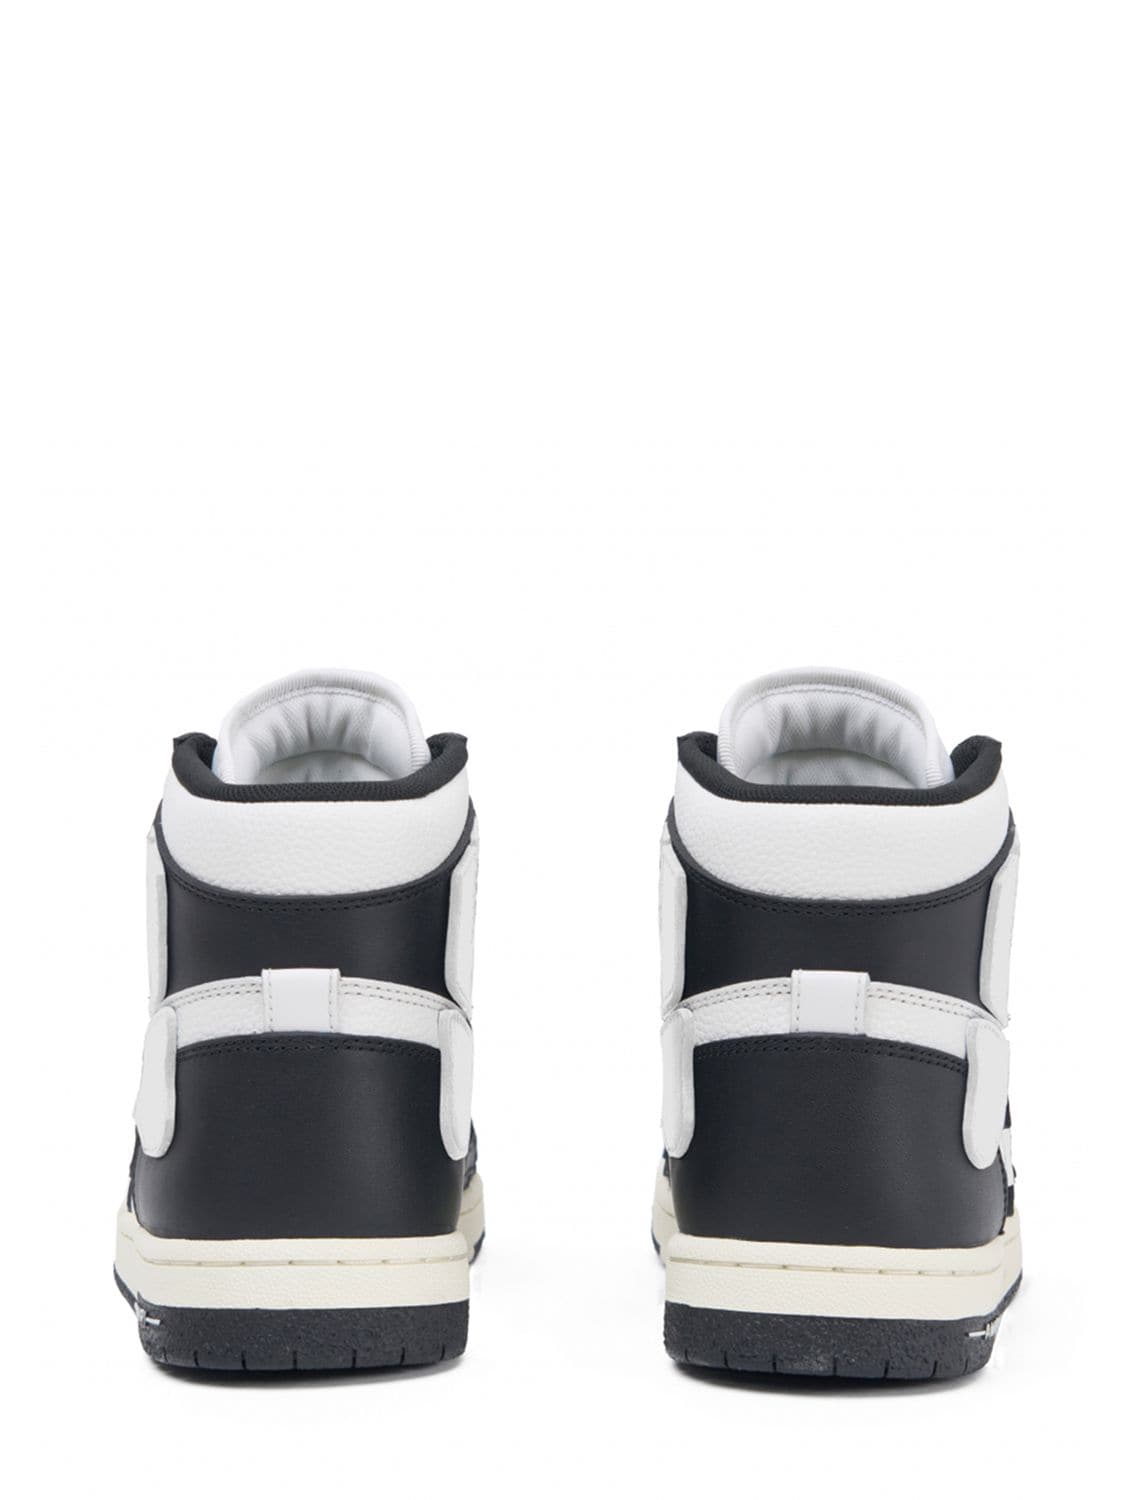 Shop Amiri Skel High Top Sneakers In Black,white